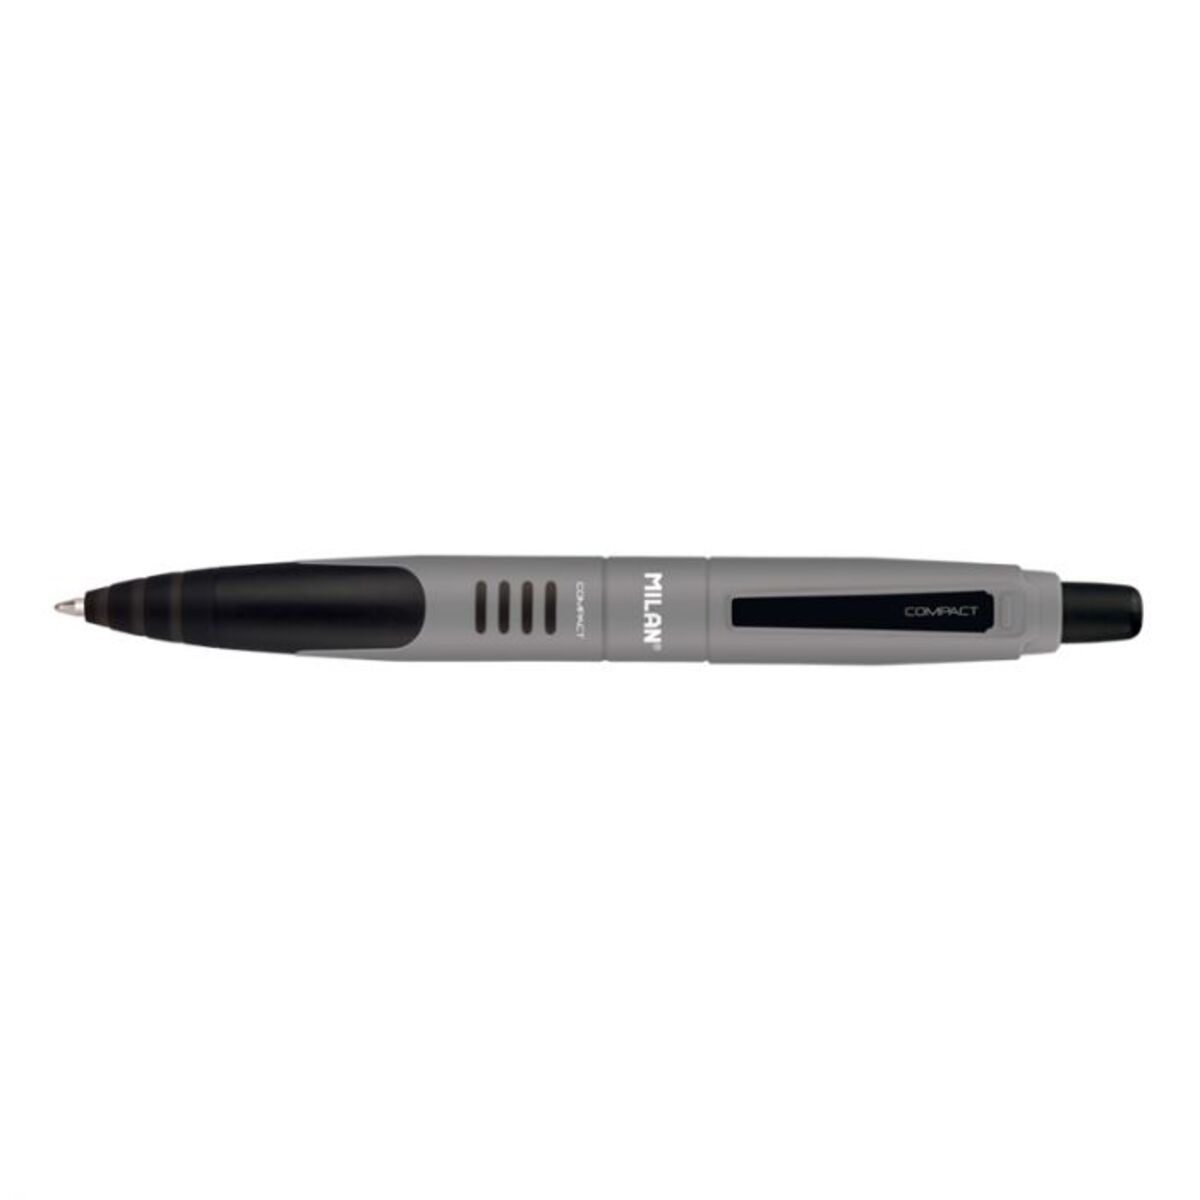 Milan Compact Tükenmez Kalem 1.0mm - Siyah